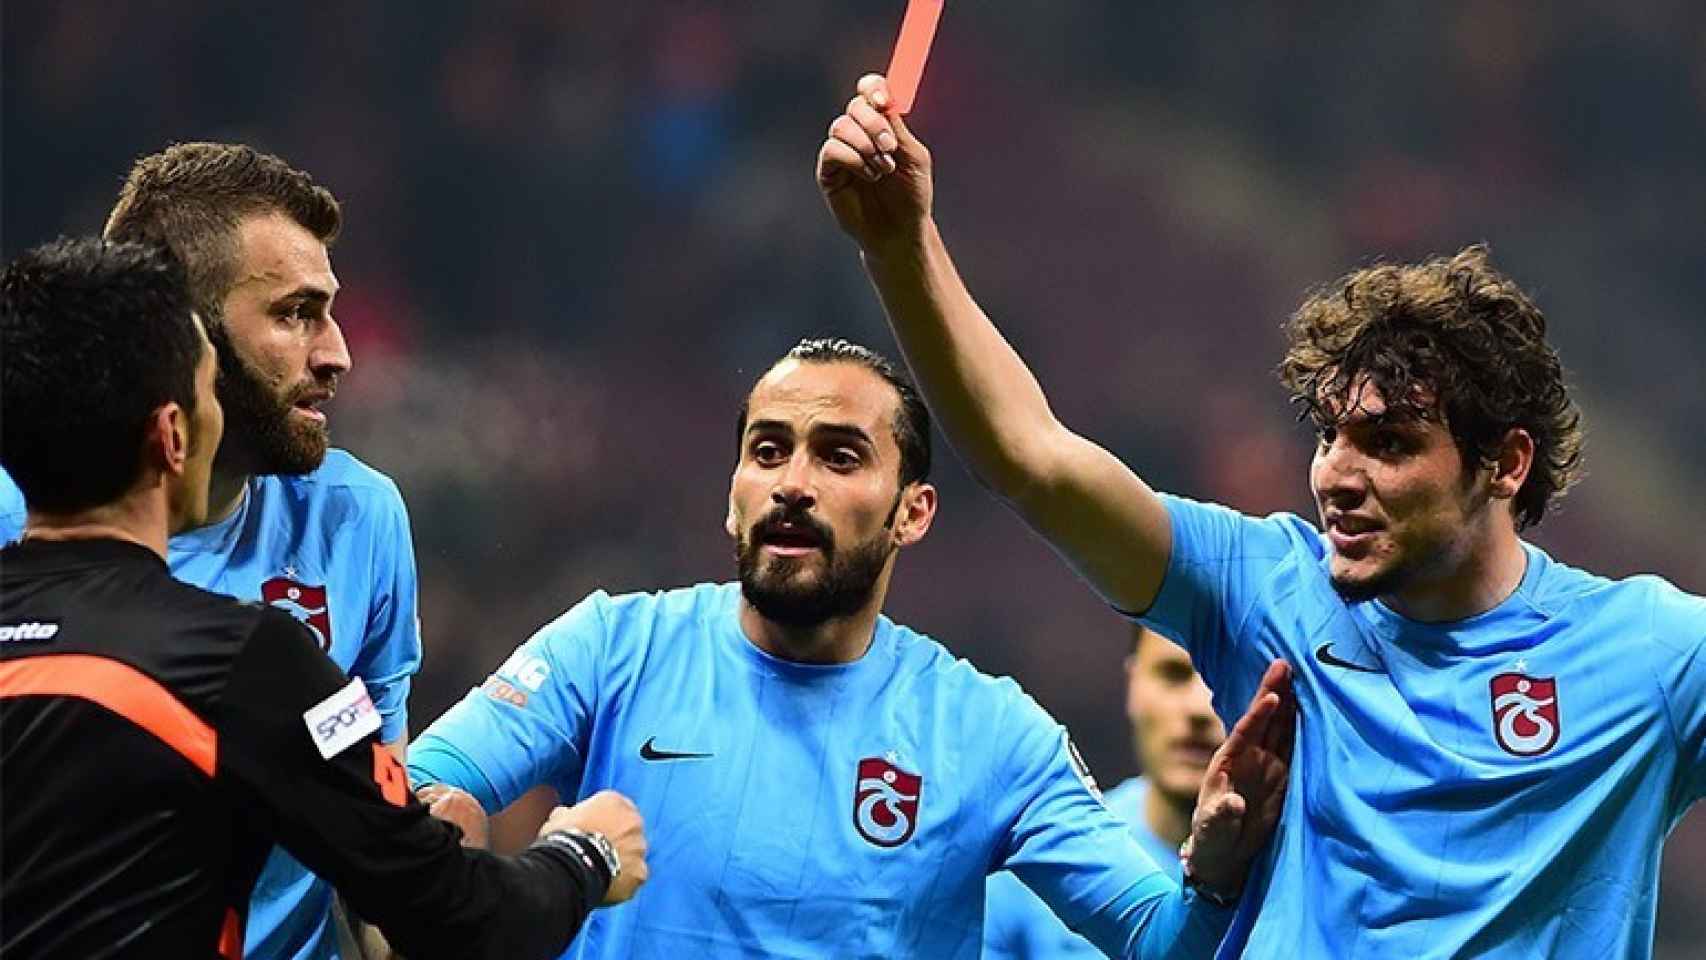 Un jugador del Trabzonspor enseña la tarjeta roja al árbitro.